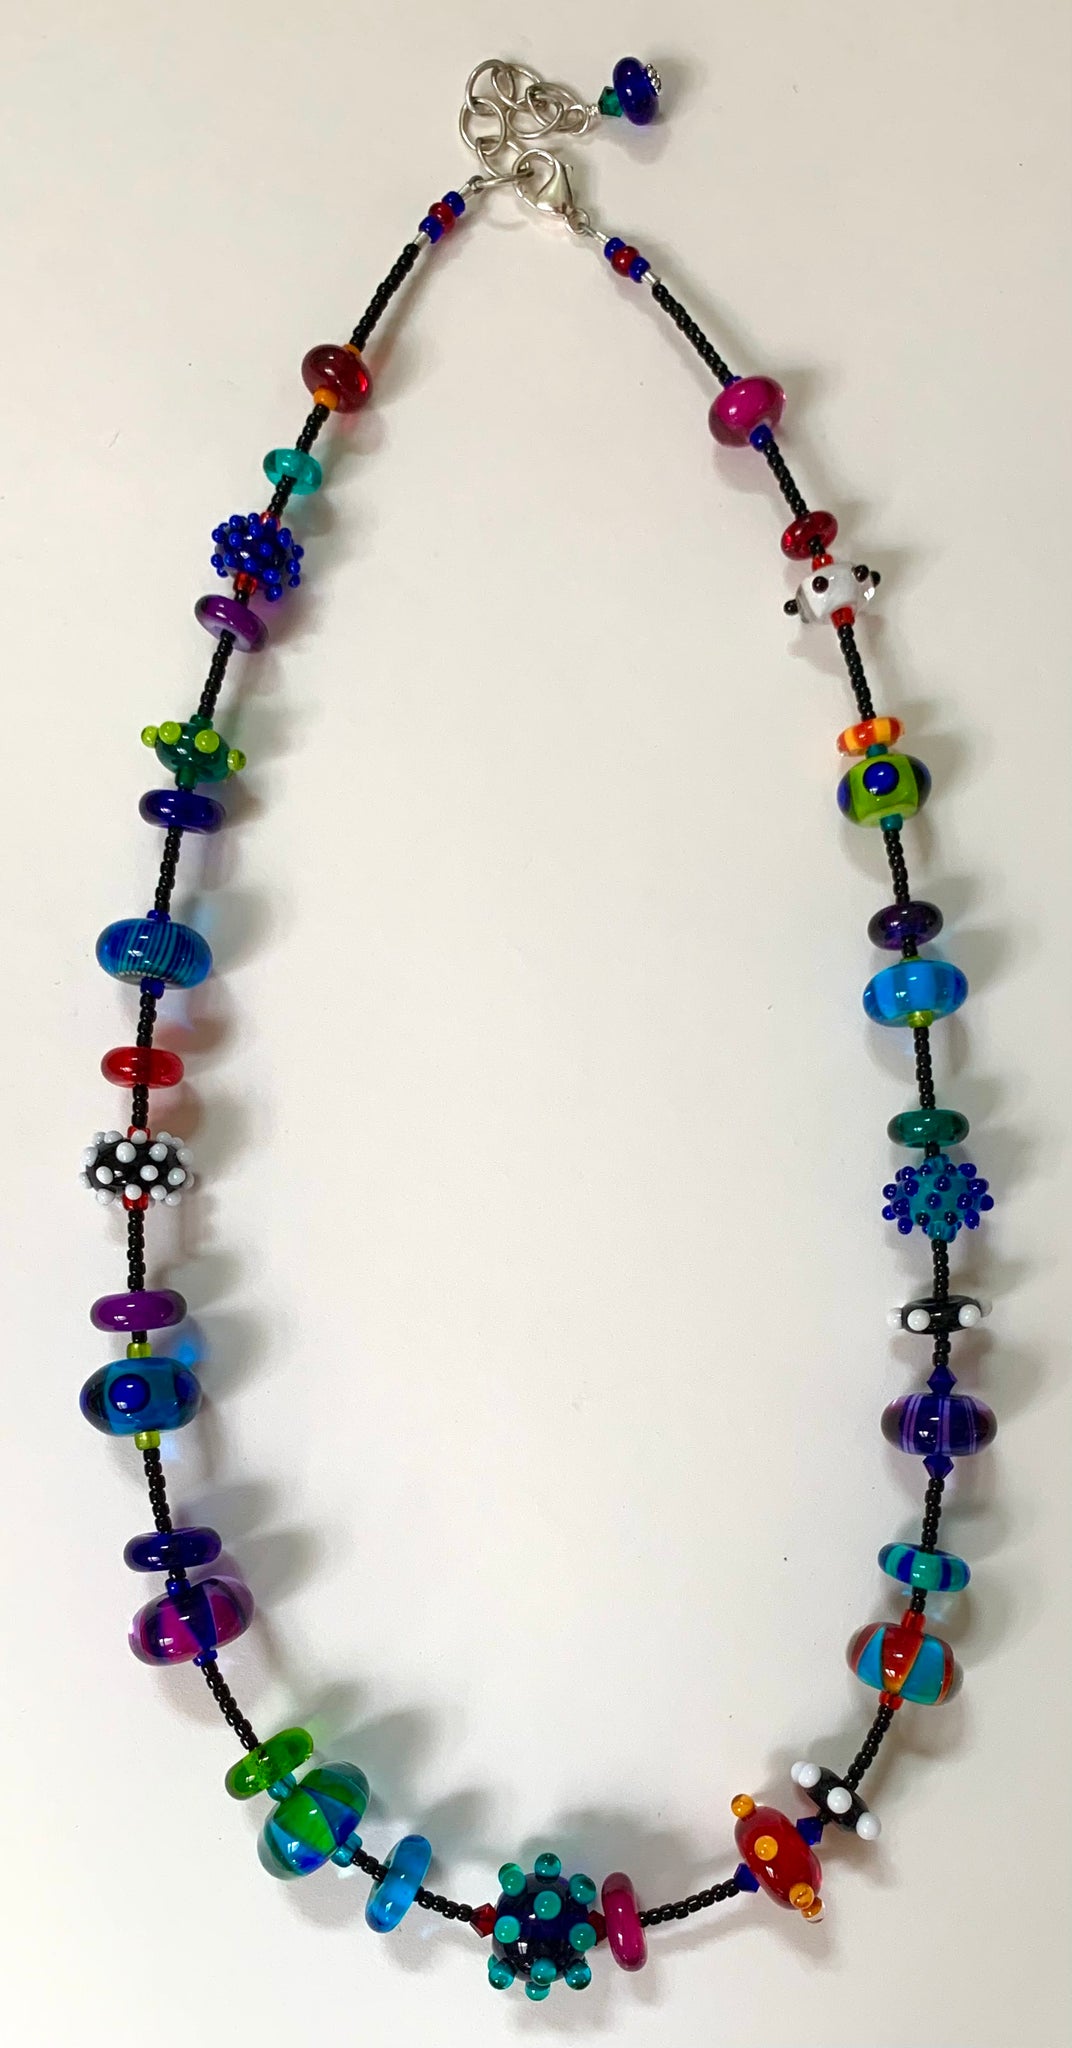 Multi colored necklace